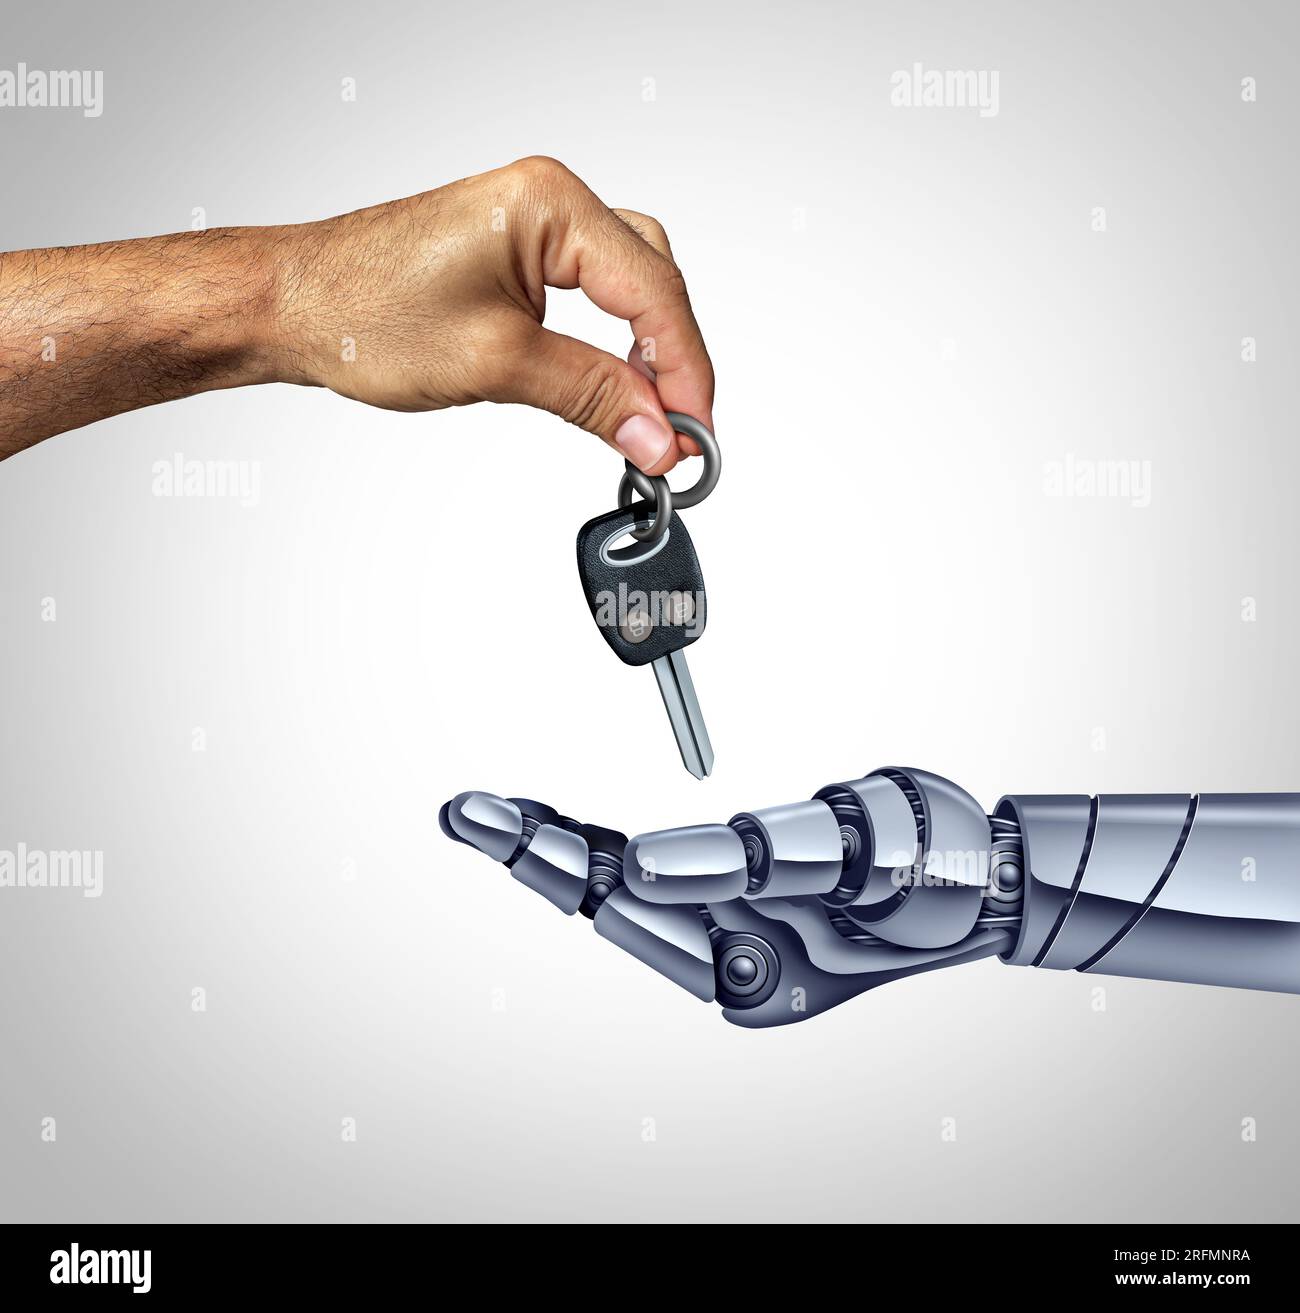 Selbstfahrender Roboter und Roboter-Fahrer als Mensch, der die Schlüssel eines selbstfahrenden autonomen Fahrzeugs und eines fahrerlosen Autos an eine künstliche oder künstliche Intelligenz übergibt Stockfoto